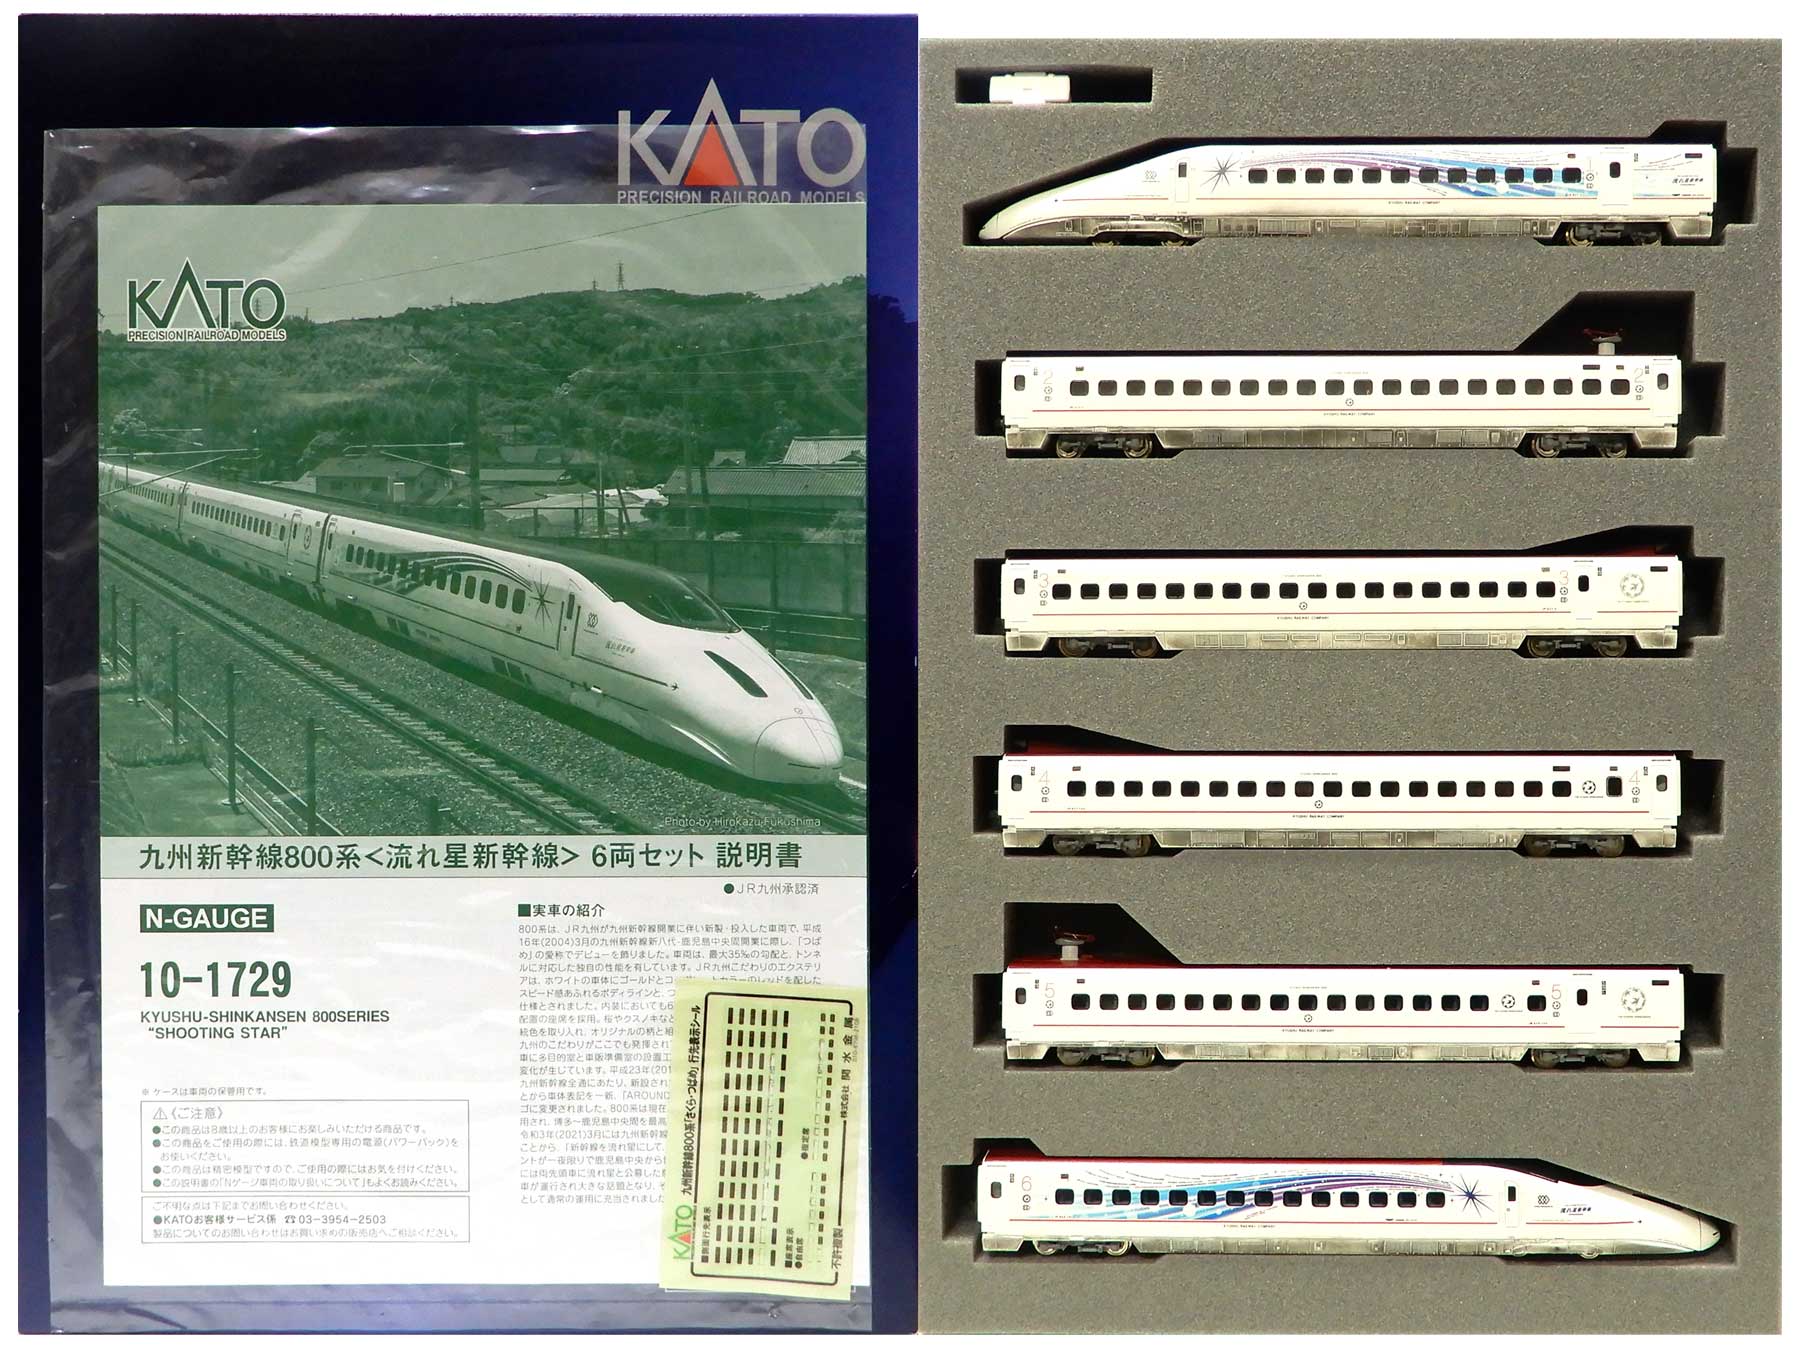 レインボー室内灯装備 KATO 流れ星新幹線 10-1729 九州新幹線800系 